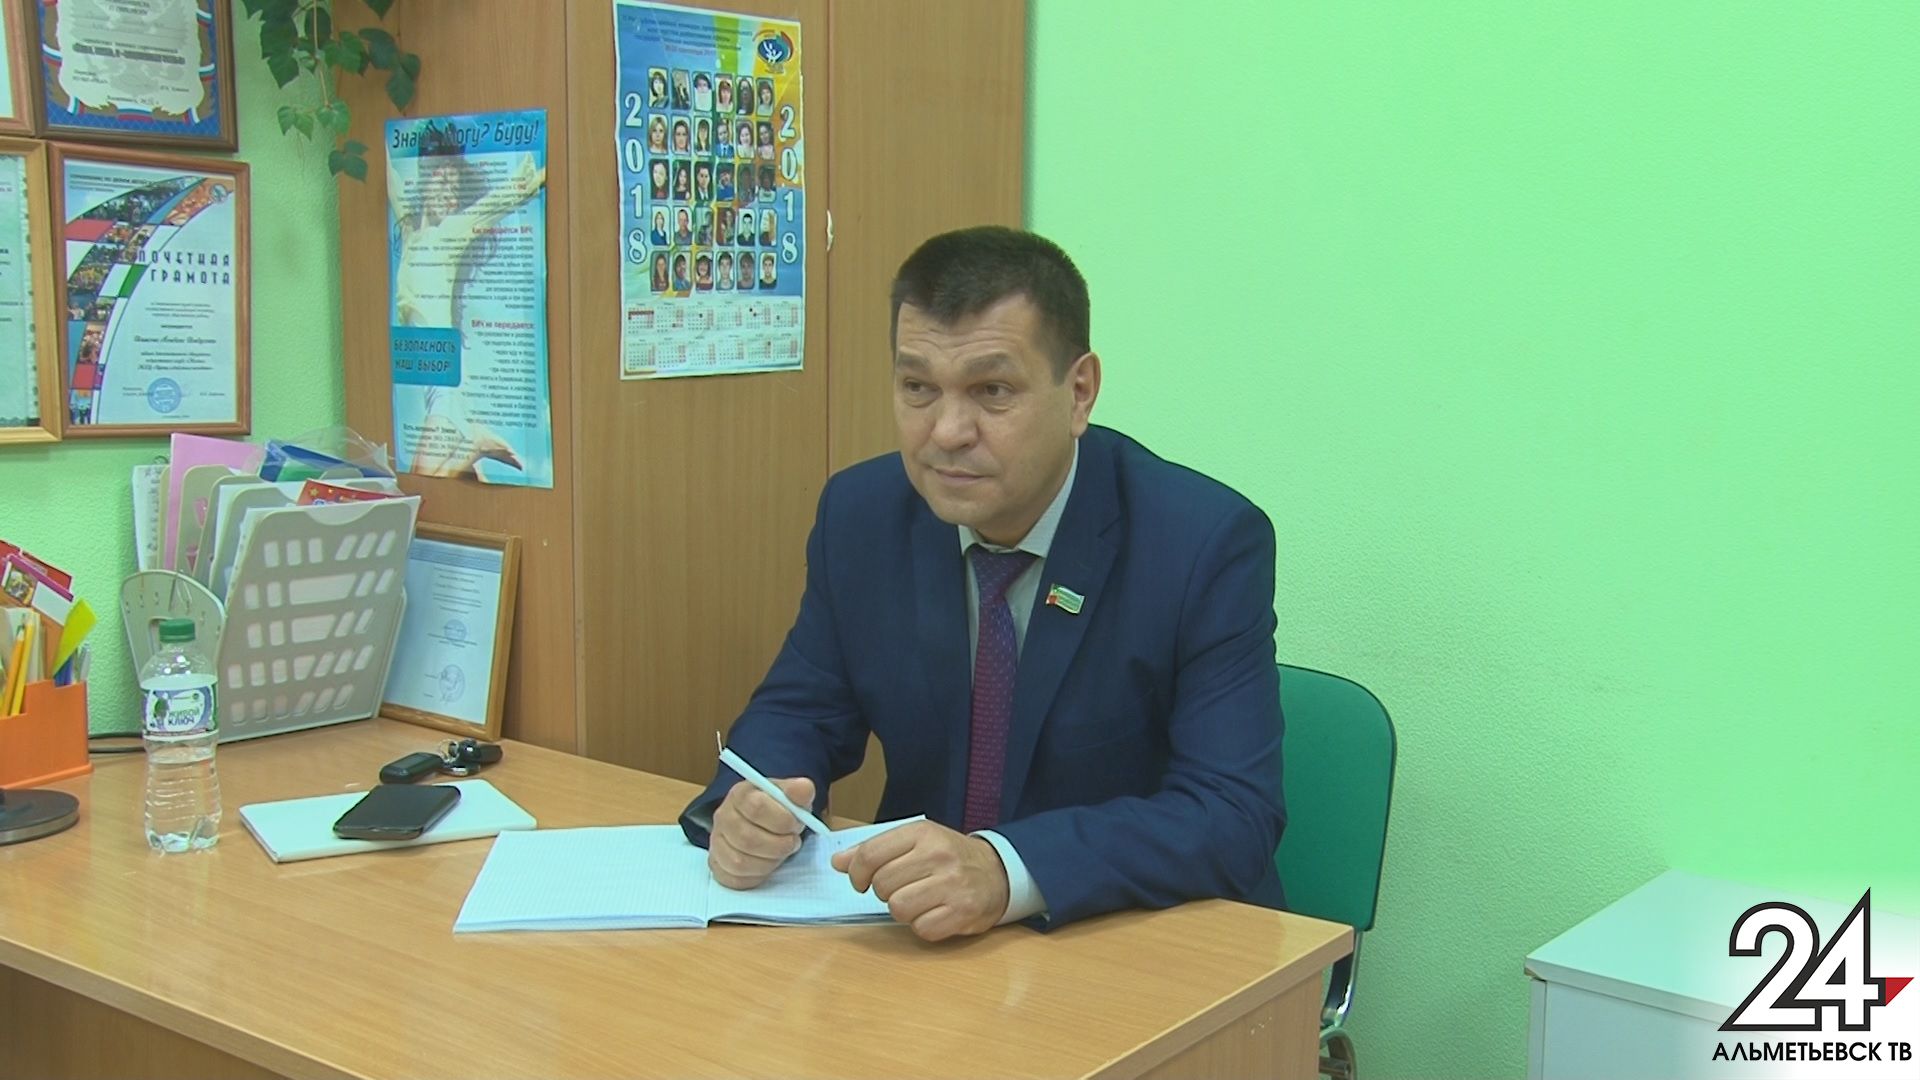 Все решаемо: депутаты городского совета проводят приемы граждан в Альметьевске